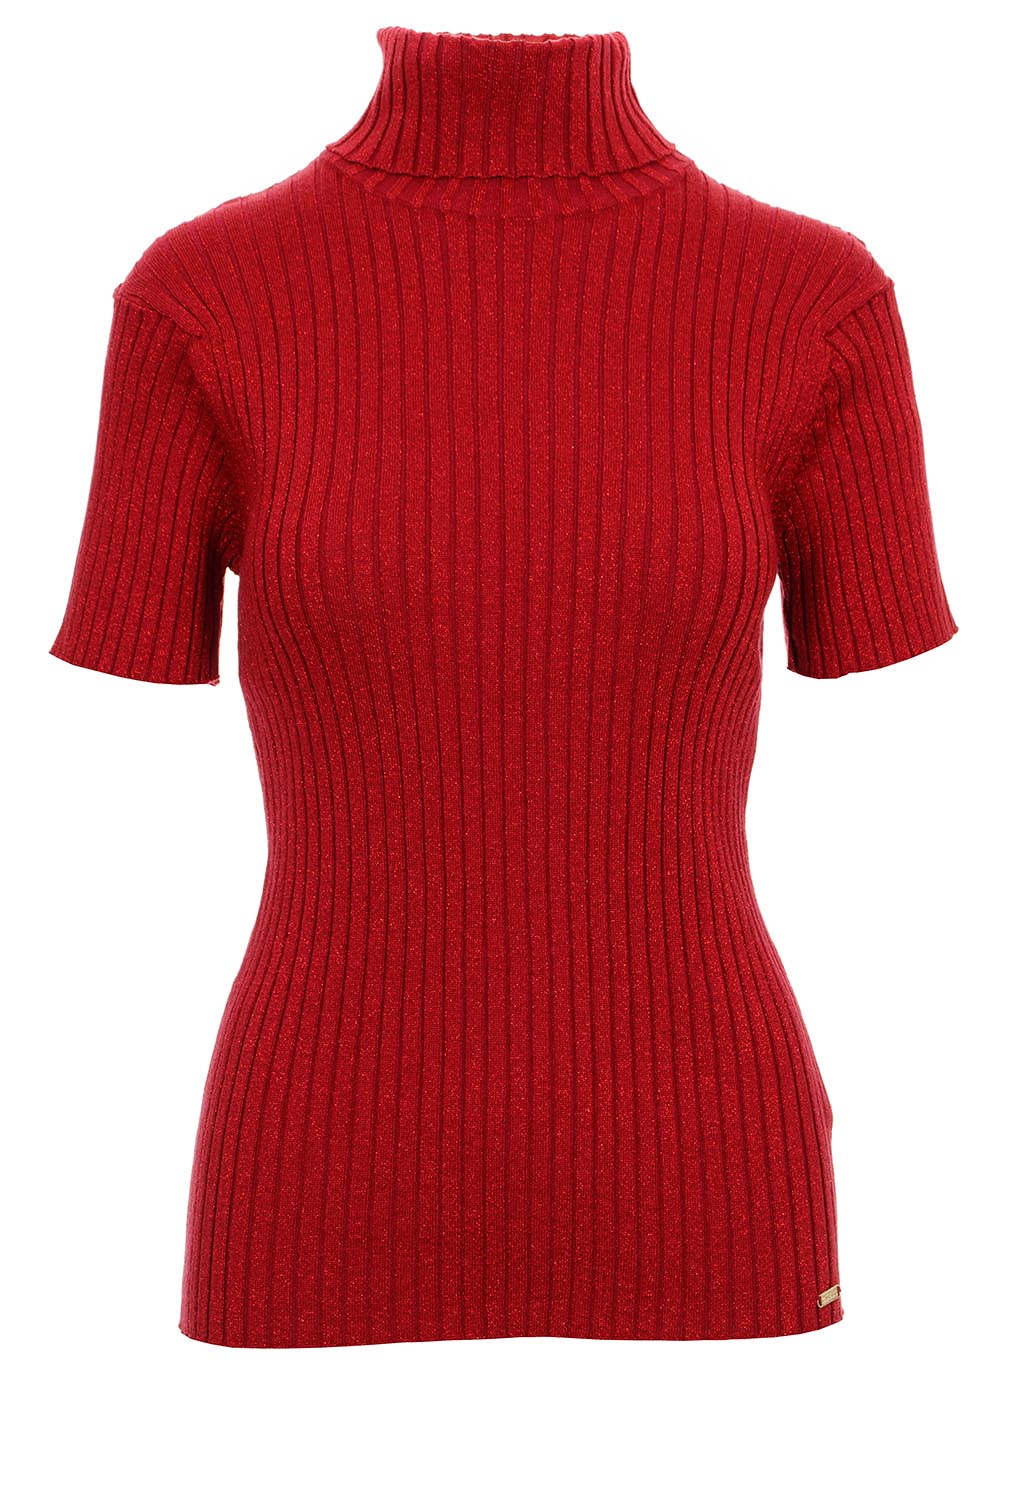 Guess dámské úpletové tričko s rolákem Jolene vínově červené Velikost: M